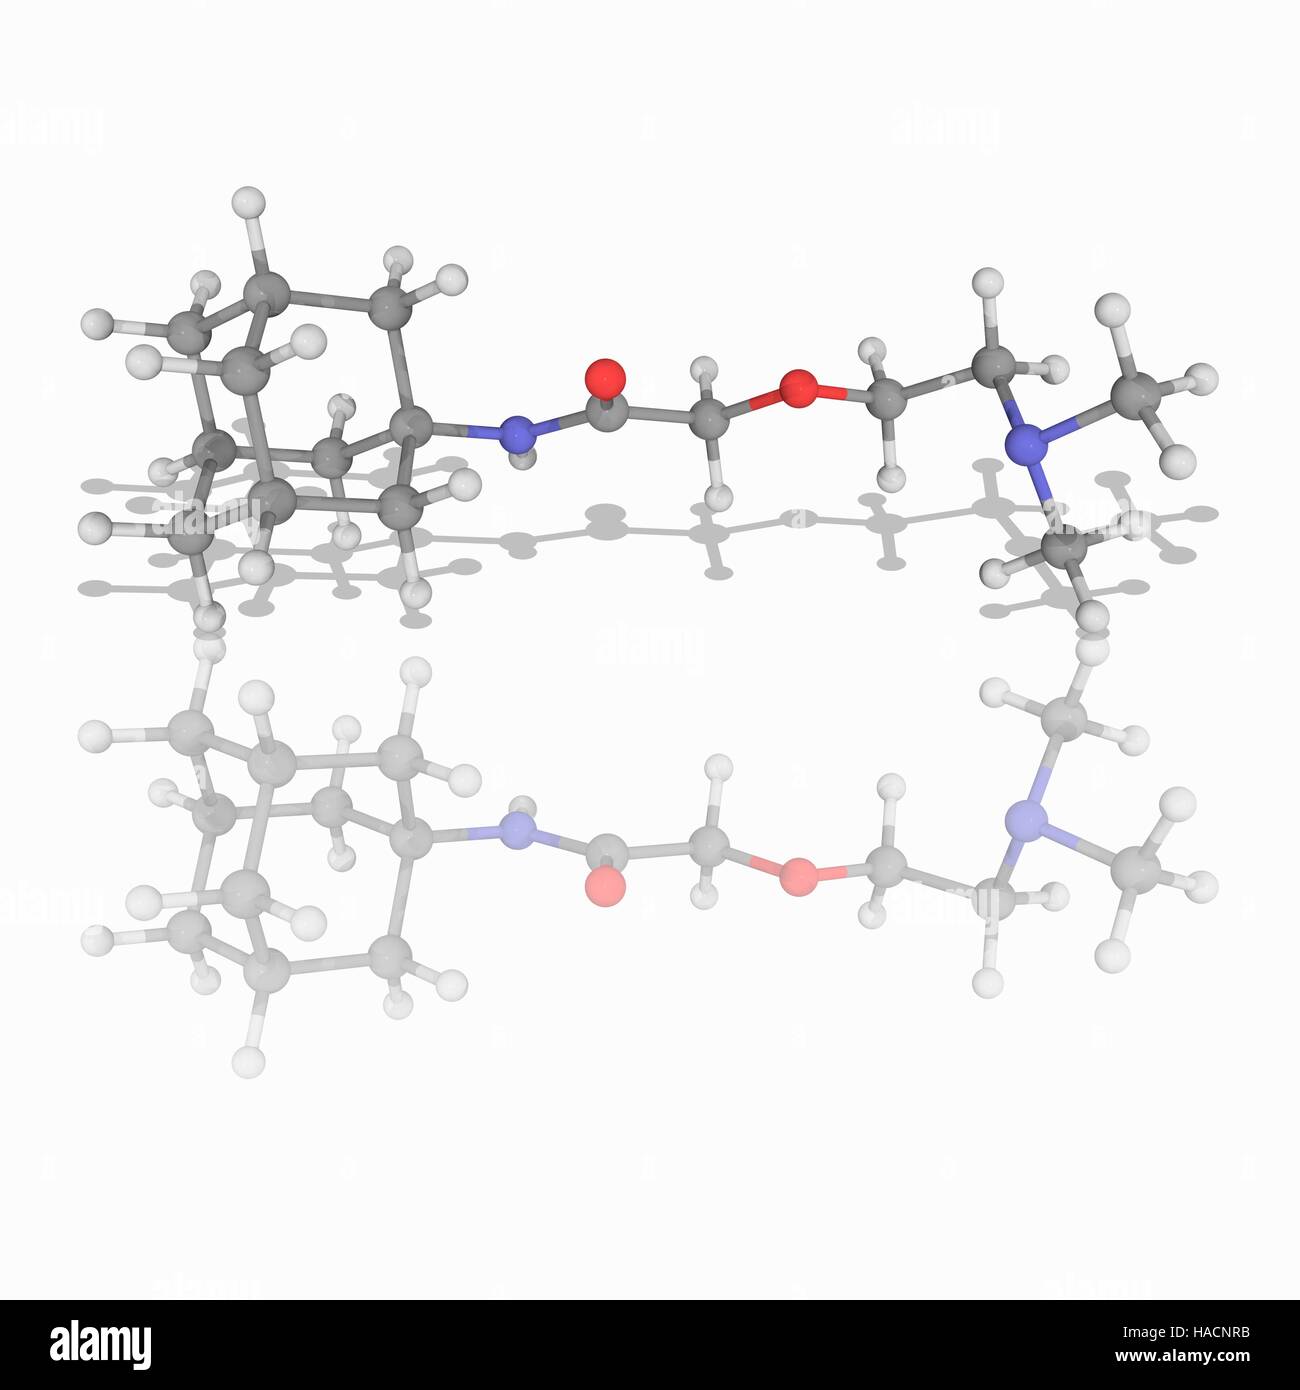 Tromantadine. Molekülmodell antivirale Medikament Tromantadine (C16. H28. N2. O2), zur Behandlung von Infektionen mit dem Herpes-Simplex-Virus. Atome als Kugeln dargestellt werden und sind farblich gekennzeichnet: Kohlenstoff (grau), Wasserstoff (weiß), Stickstoff (blau) und Sauerstoff (rot). Abbildung. Stockfoto